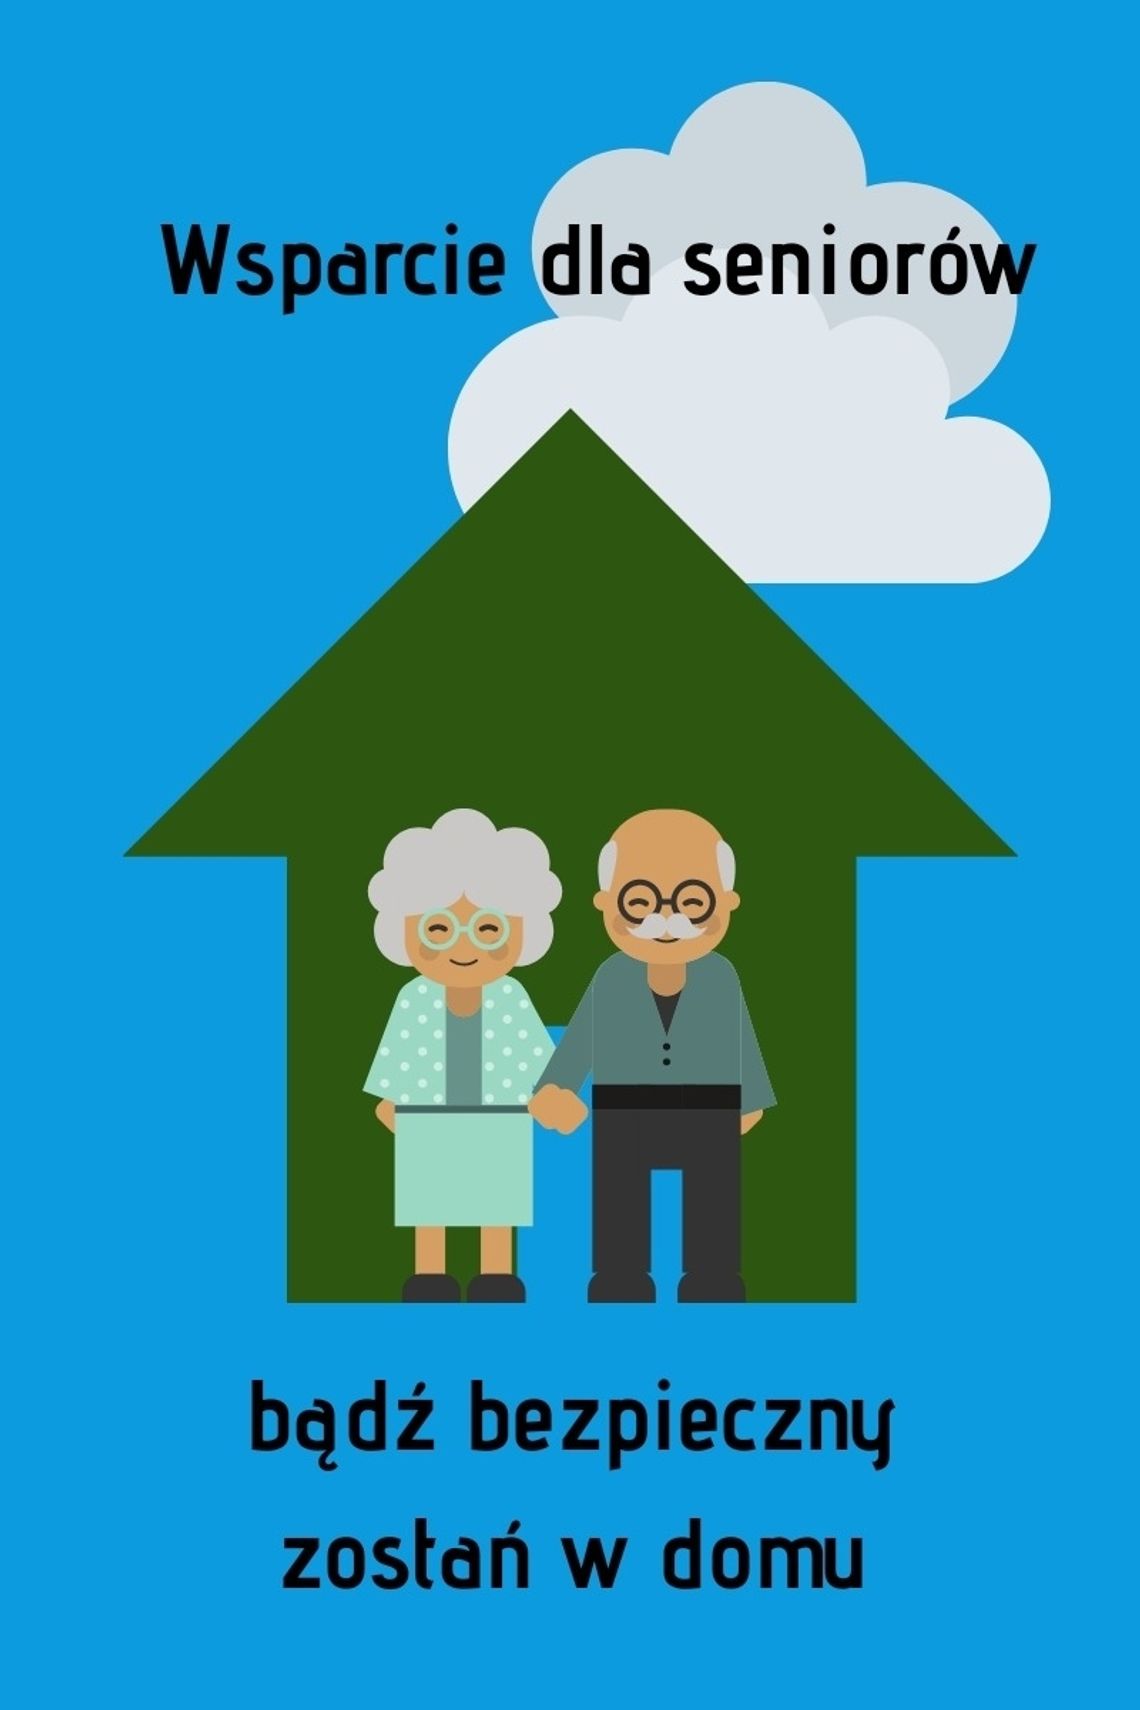 Grafika. Na niebieskim tle, zielony domek, nad nim białe chmury. Przed domkiem para seniorów trzyma się za ręce. Nad domkiem napis "Wsparcie dla seniorów ". Pod domkiem napis" Bądź bezpieczny w domu".